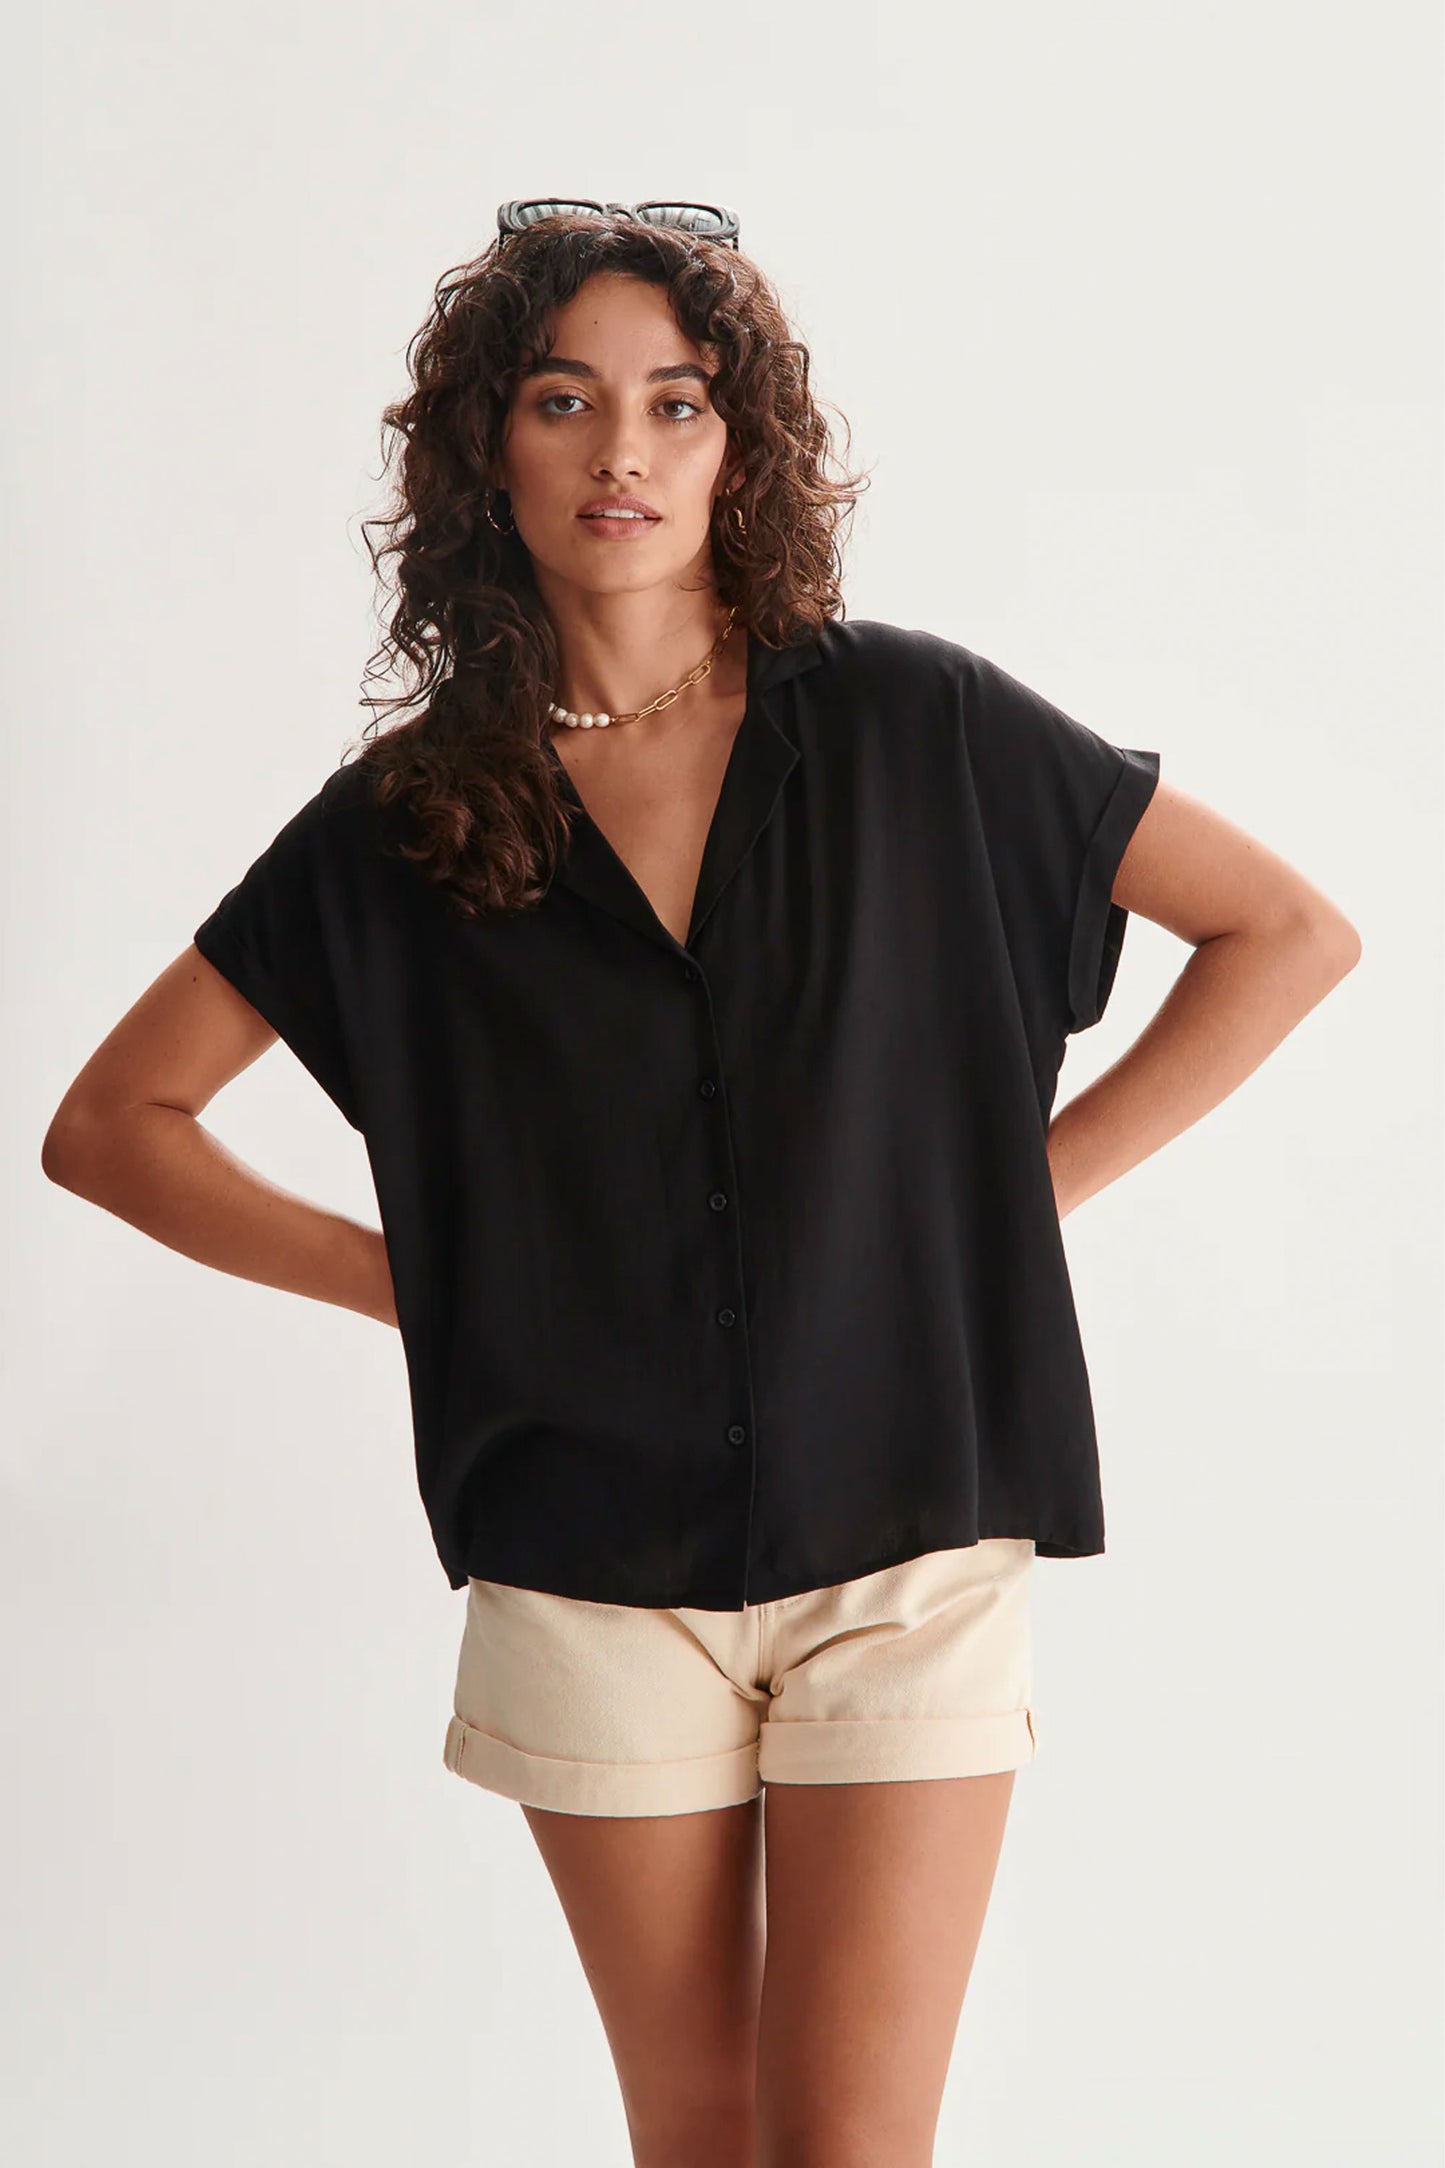 
                  
                    Pukas-Surf-Shop-woman-shirt-24colours-shirt-in-black
                  
                